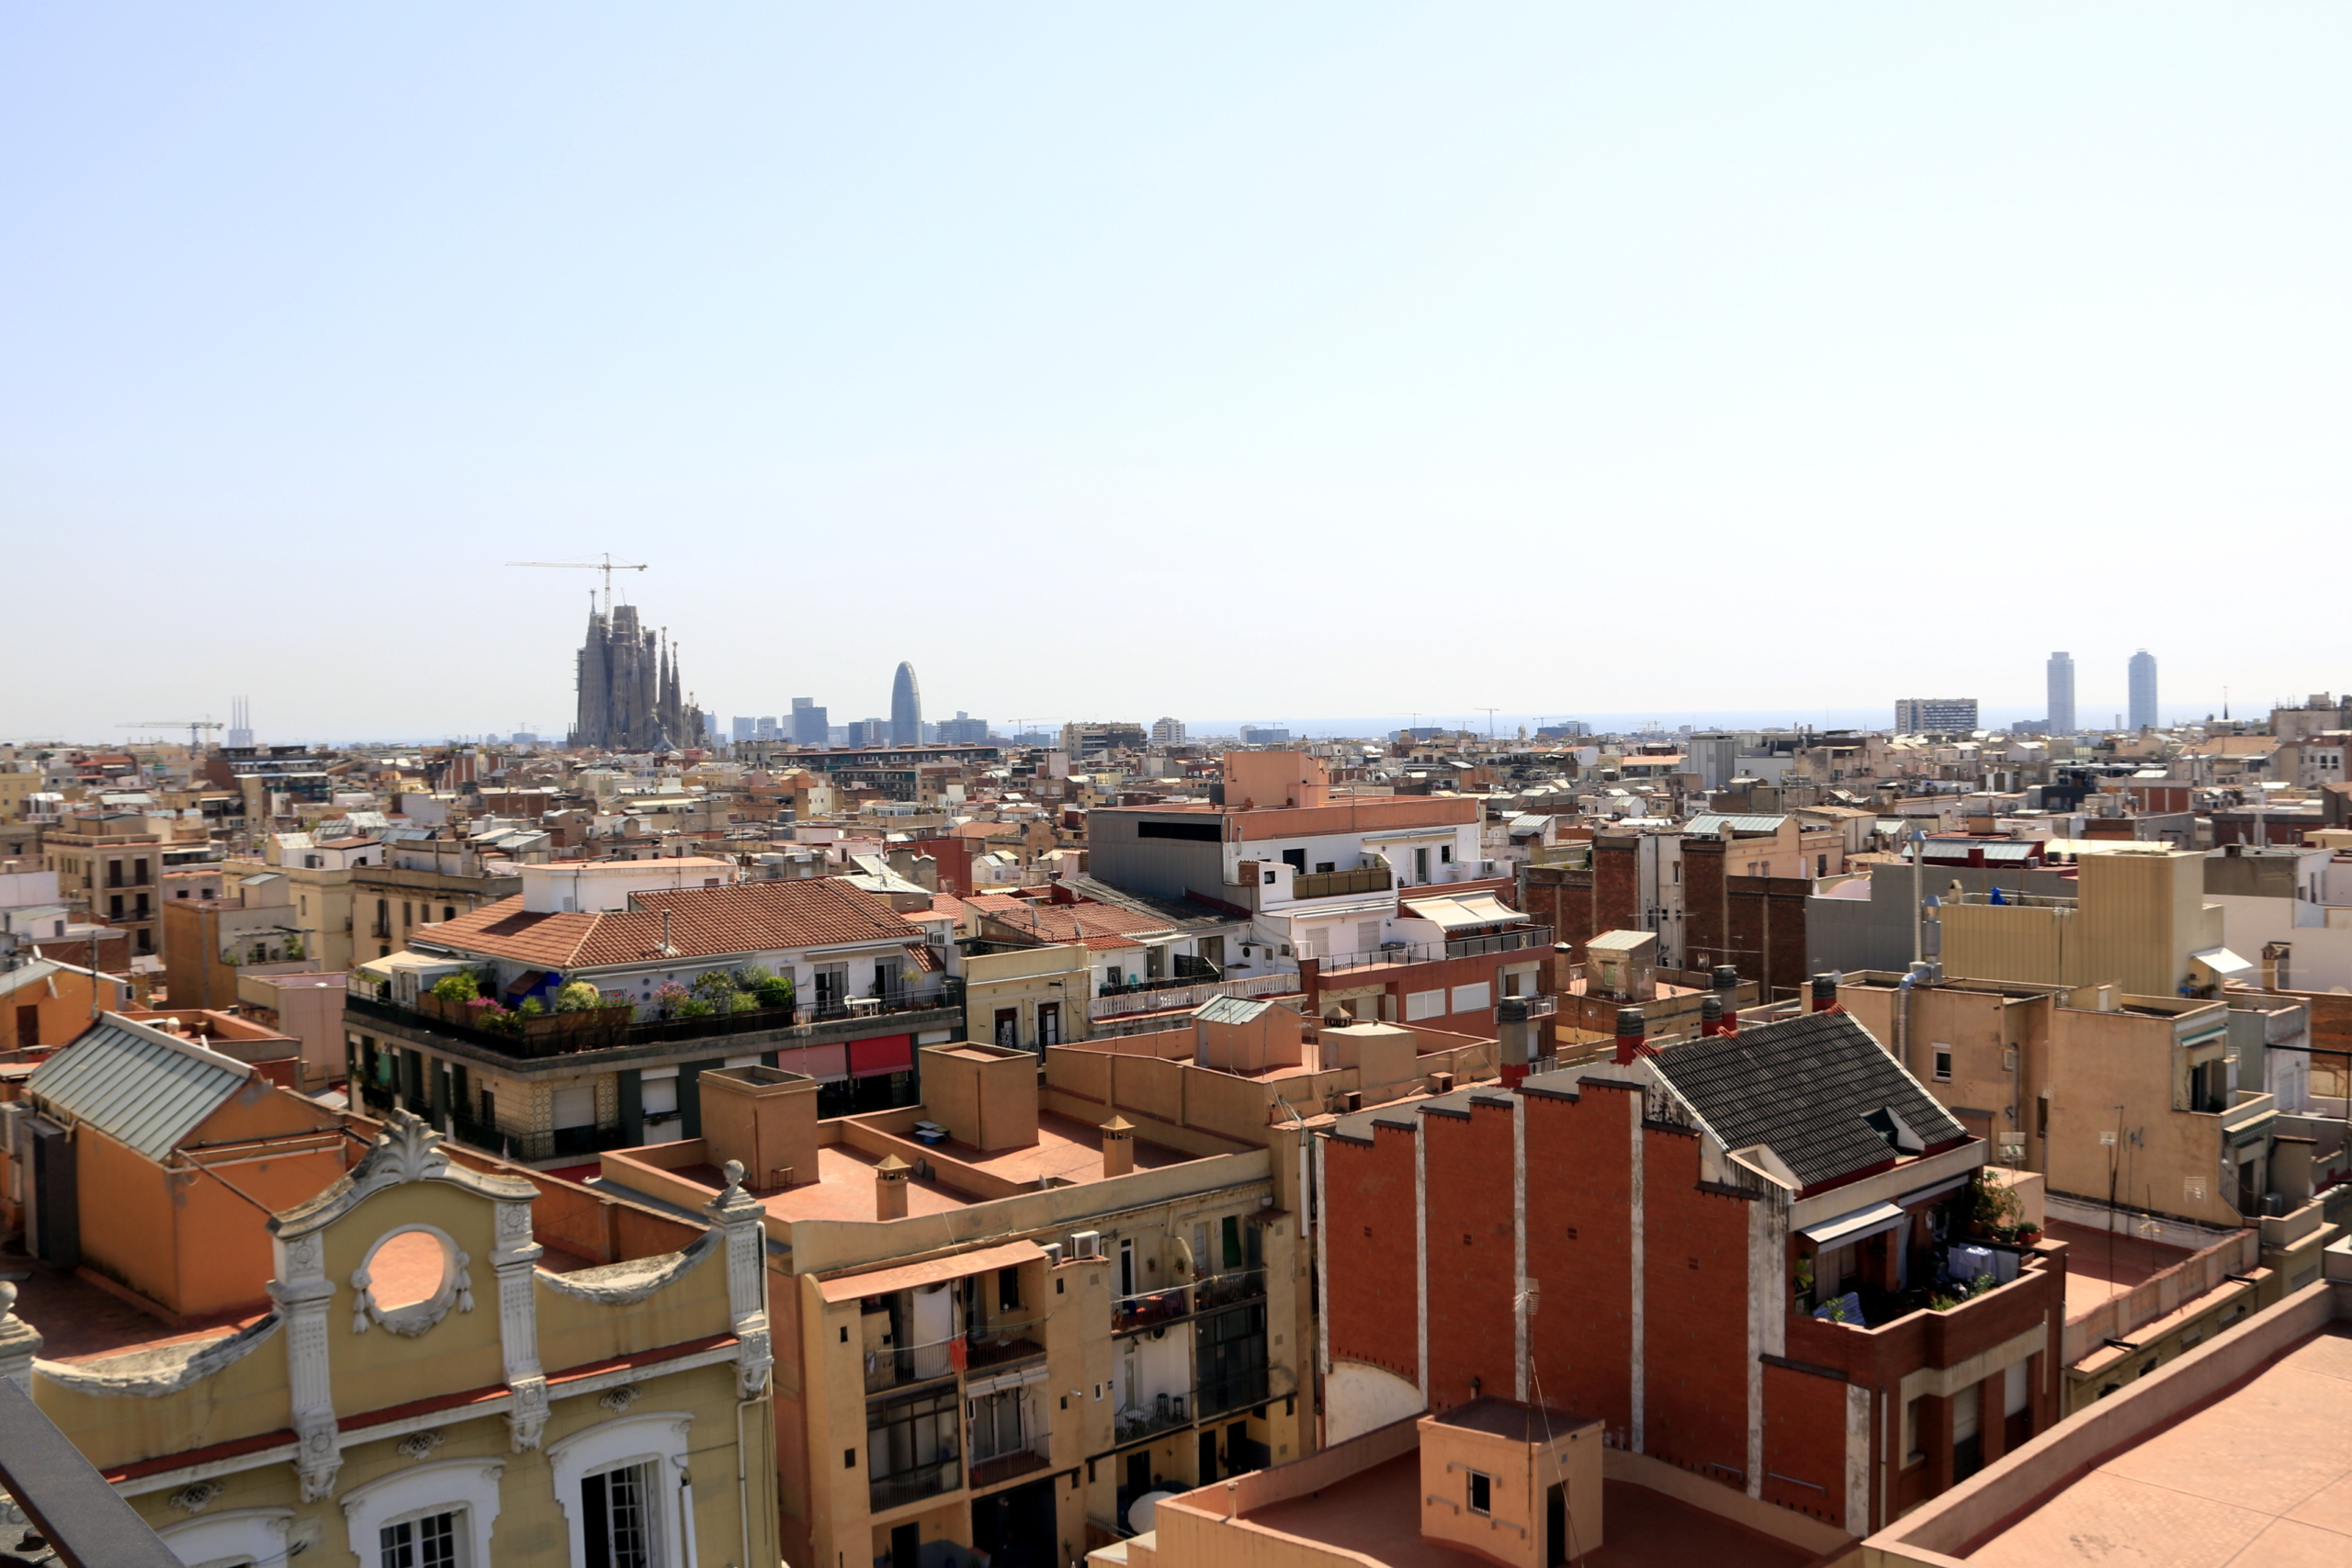 Habitatges de Barcelona que podrien ser candidats a la rehabilitació / ACN